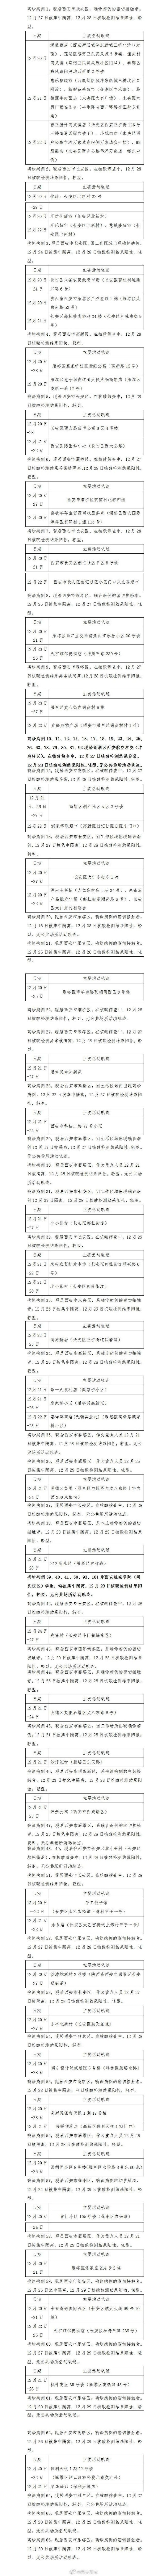 上海一干部已官复原职 曾因蔬菜包发放问题被停职 - Peraplay PBA - Peraplay.Org 百度热点快讯